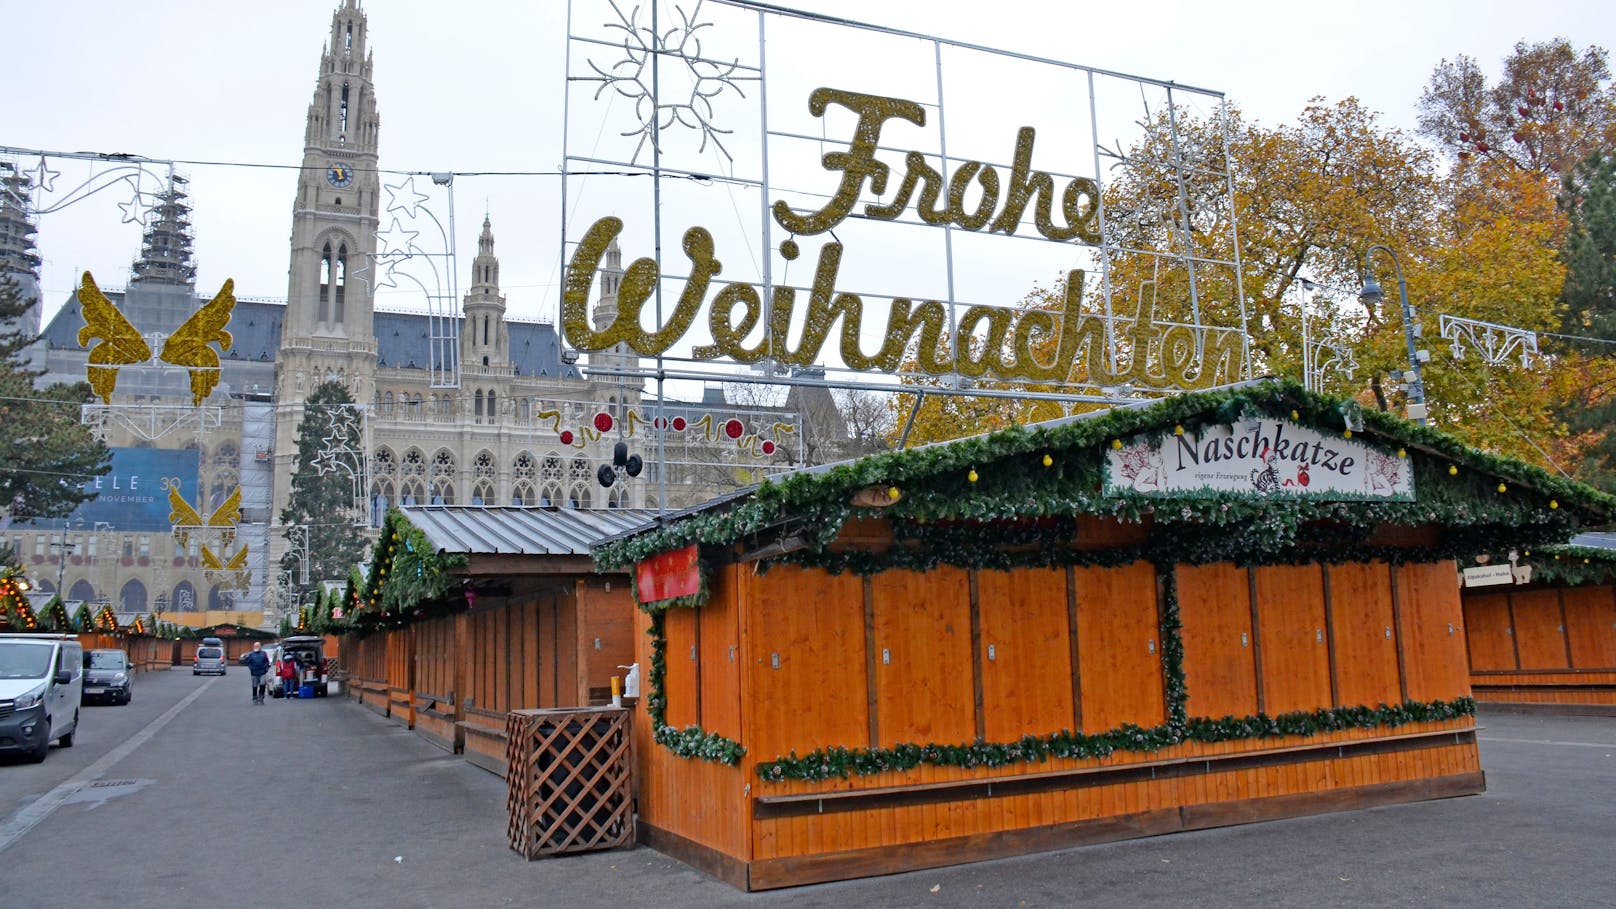 Normalerweise tummeln sich am Wiener Christkindlmarkt die Menschenmassen. Nicht so im Lockdown.